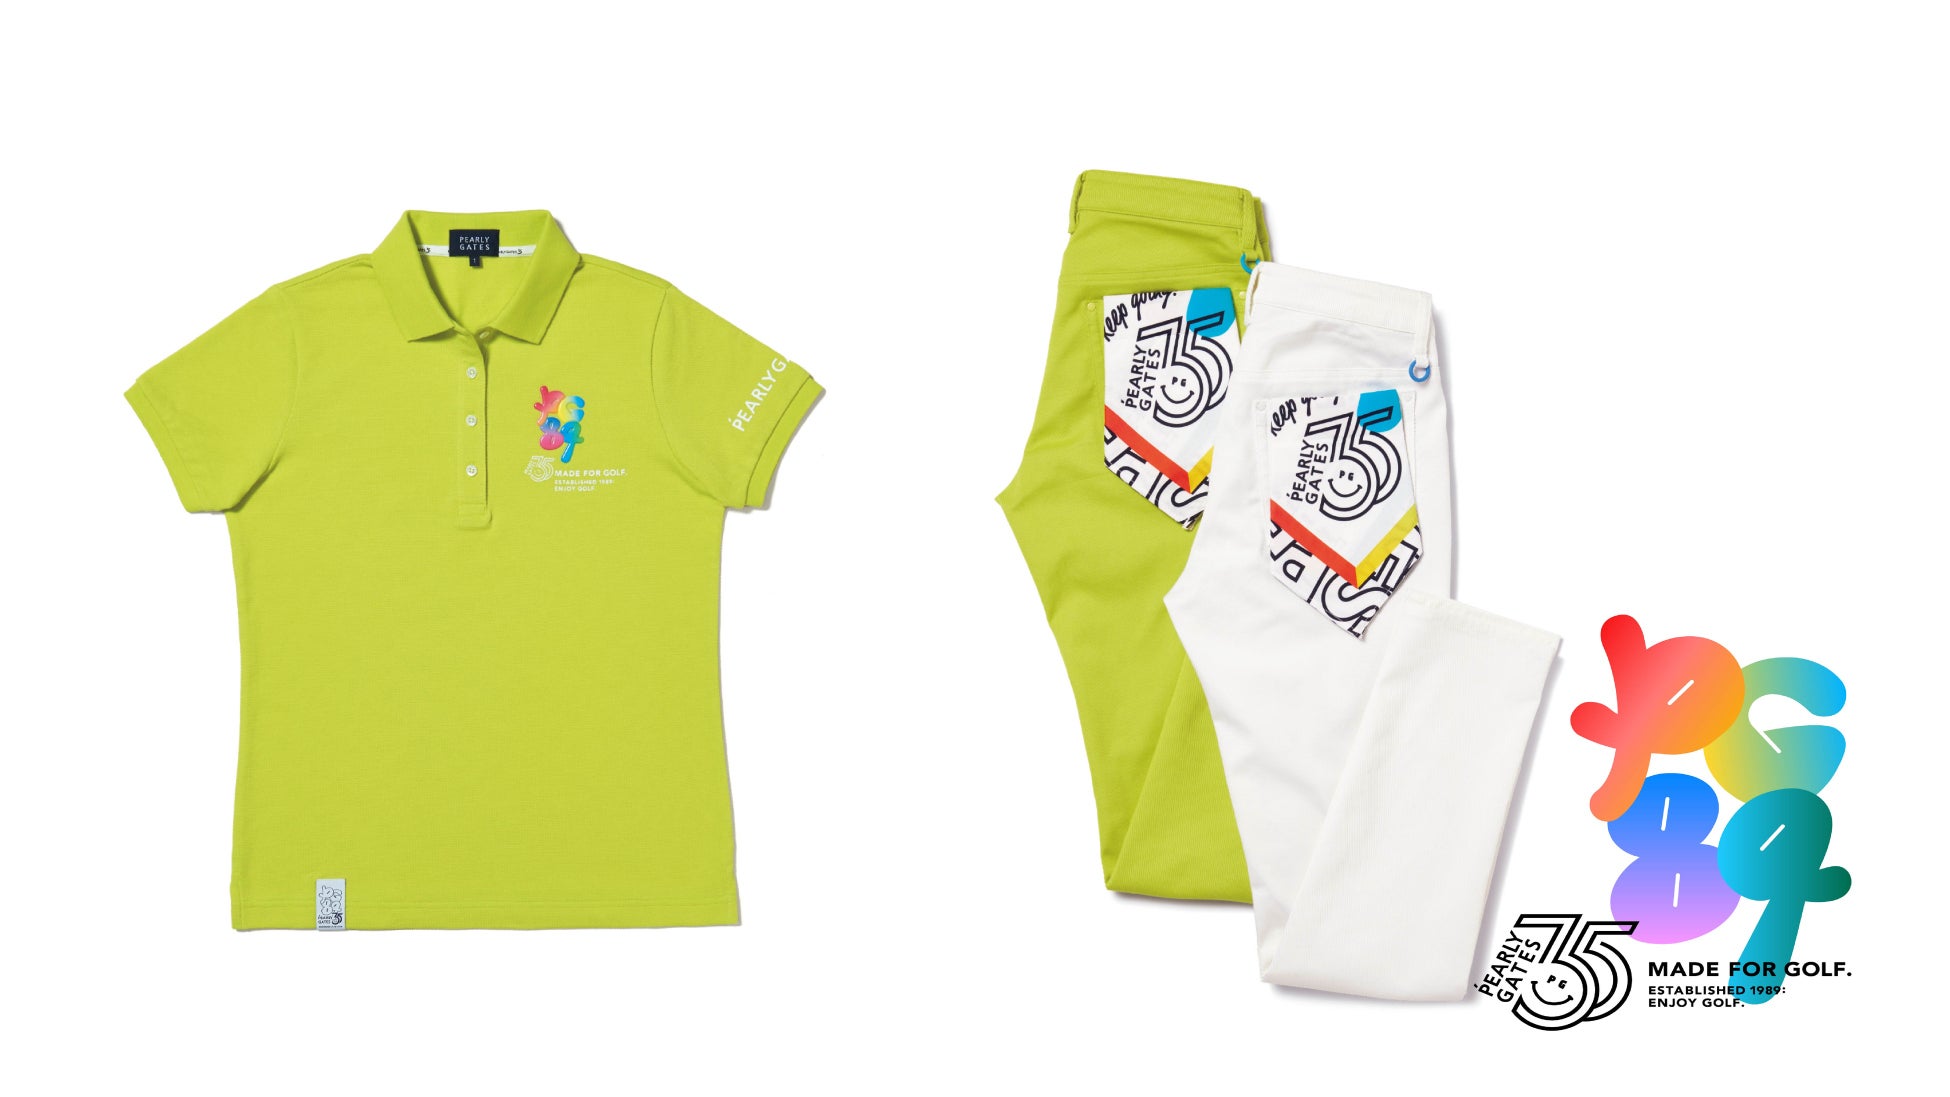 ゴルフアパレルブランド【パーリーゲイツ】ブランド設立35周年を記念したコレクションを発表！